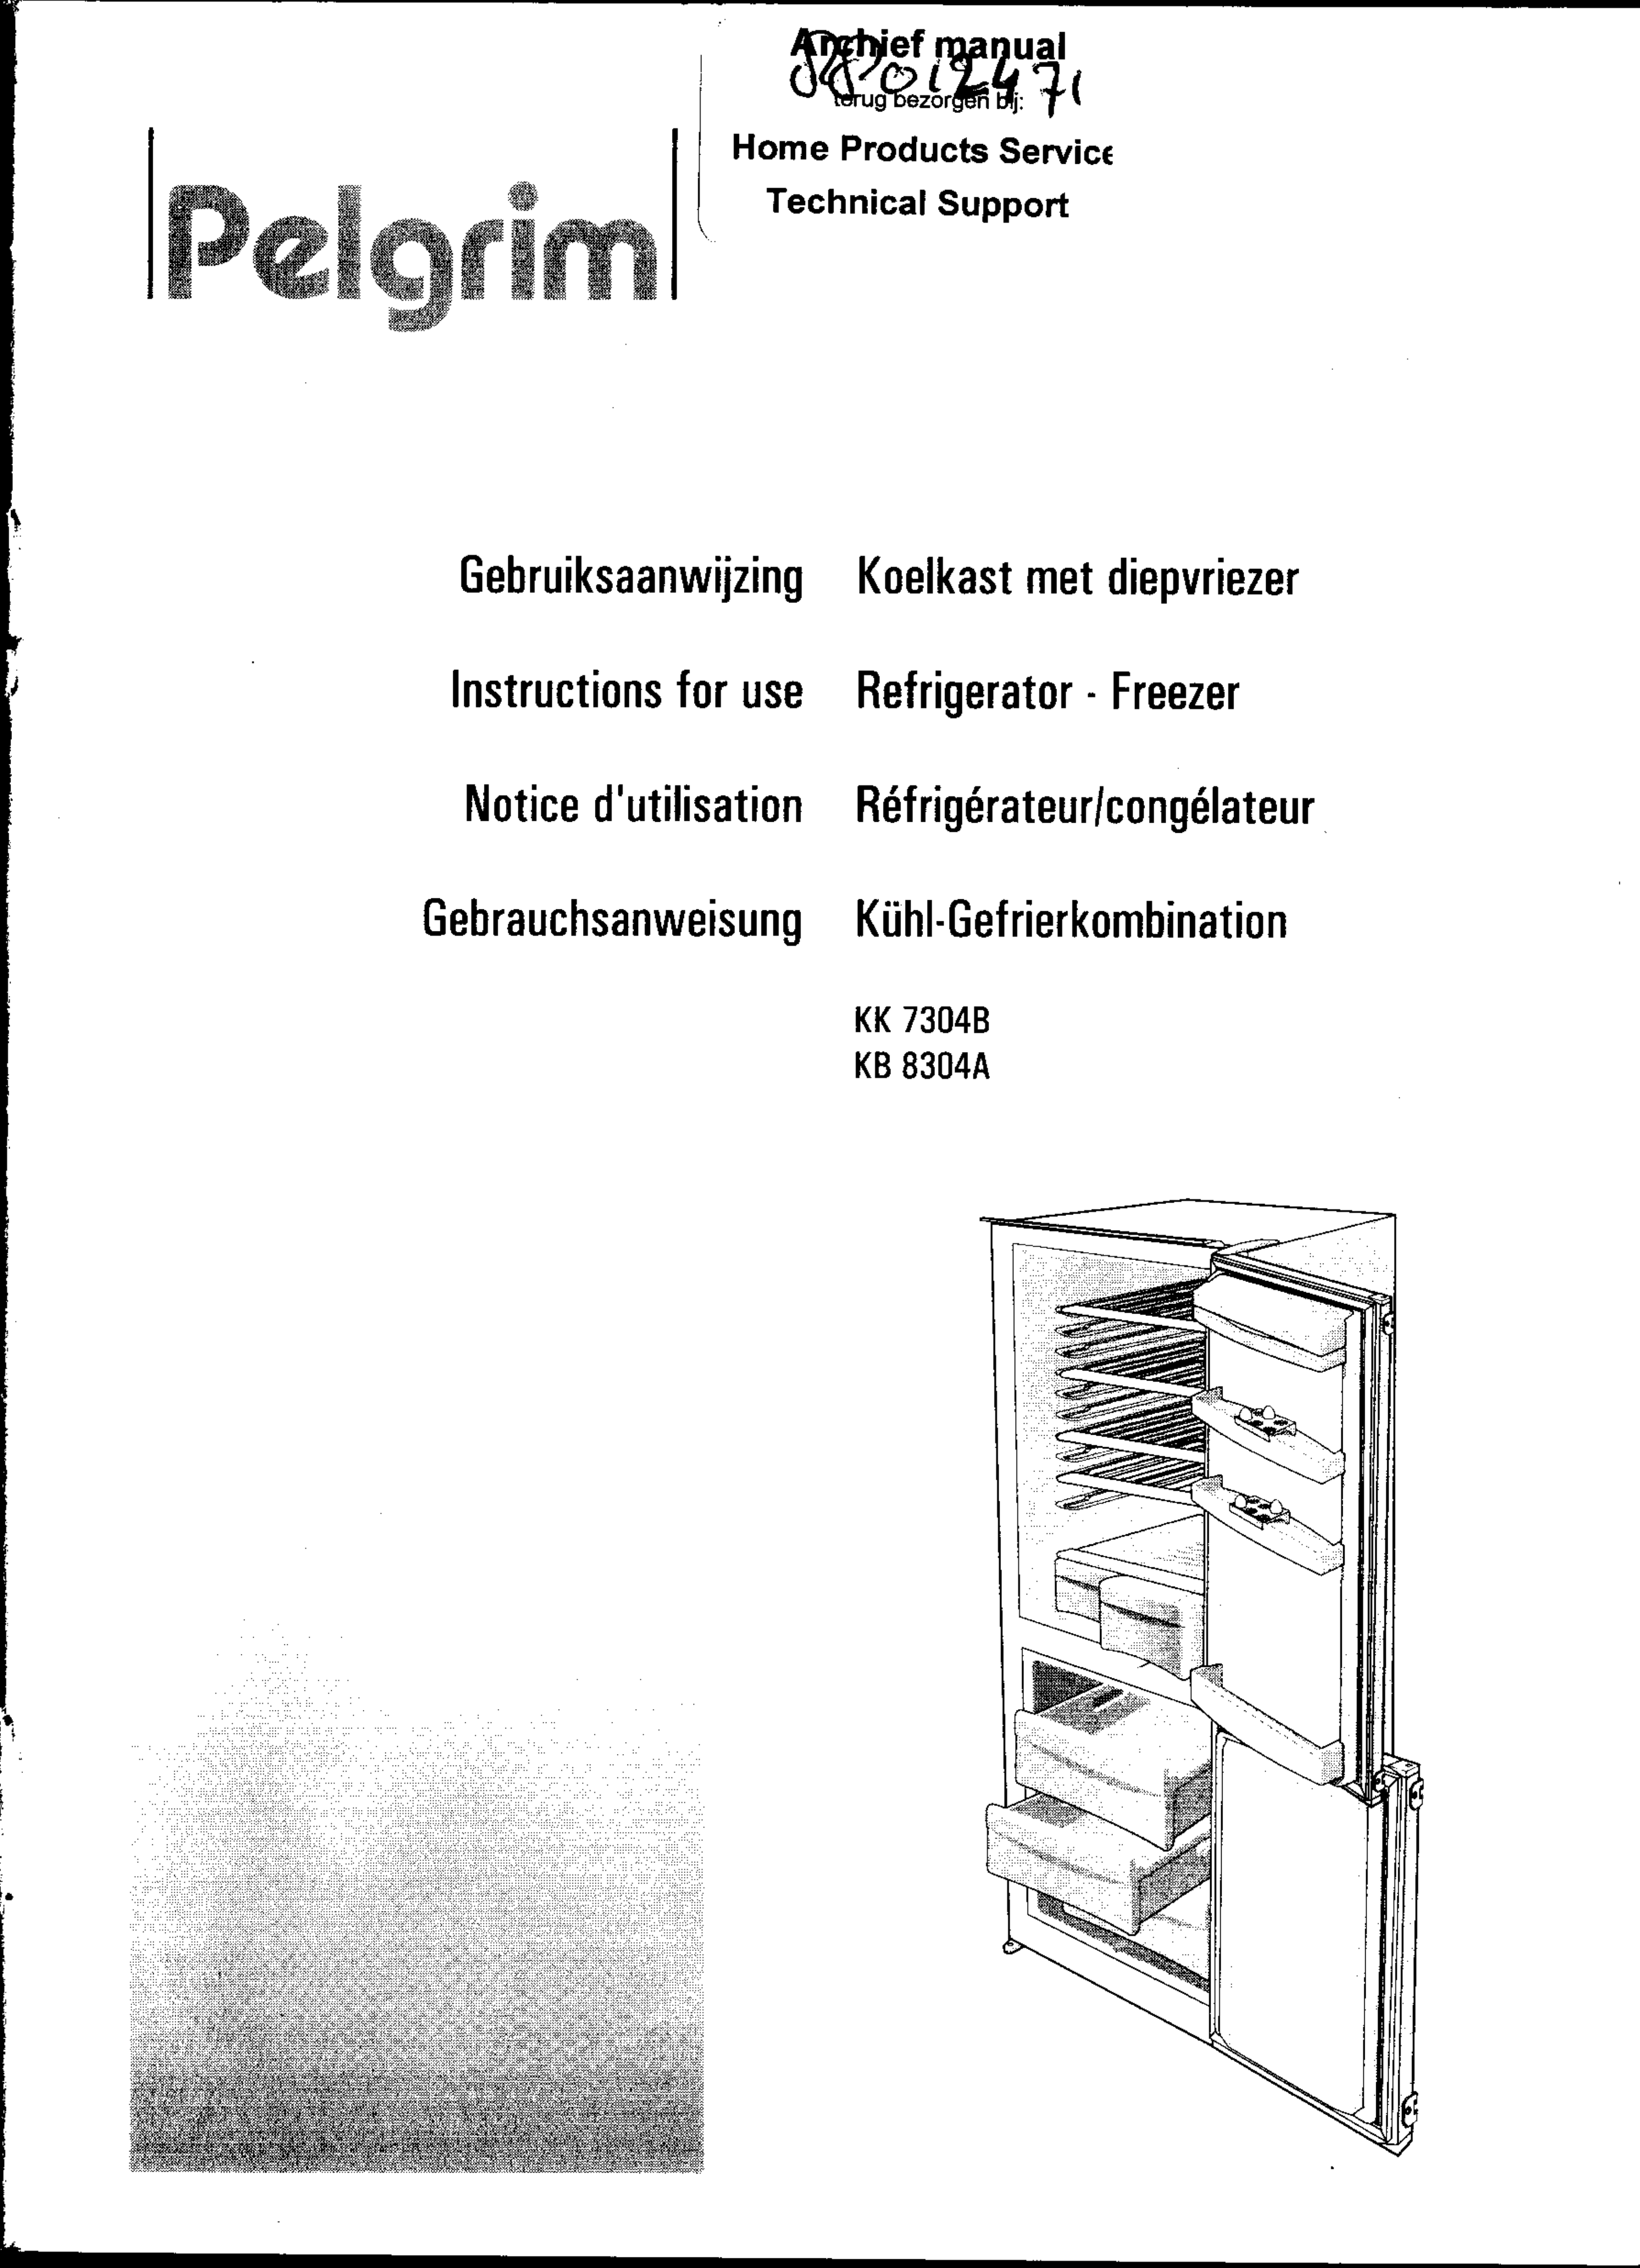 Gelijkenis Slechte factor archief Handleiding Pelgrim kk 7304 b (pagina 1 van 66) (Nederlands, Duits, Engels,  Frans)